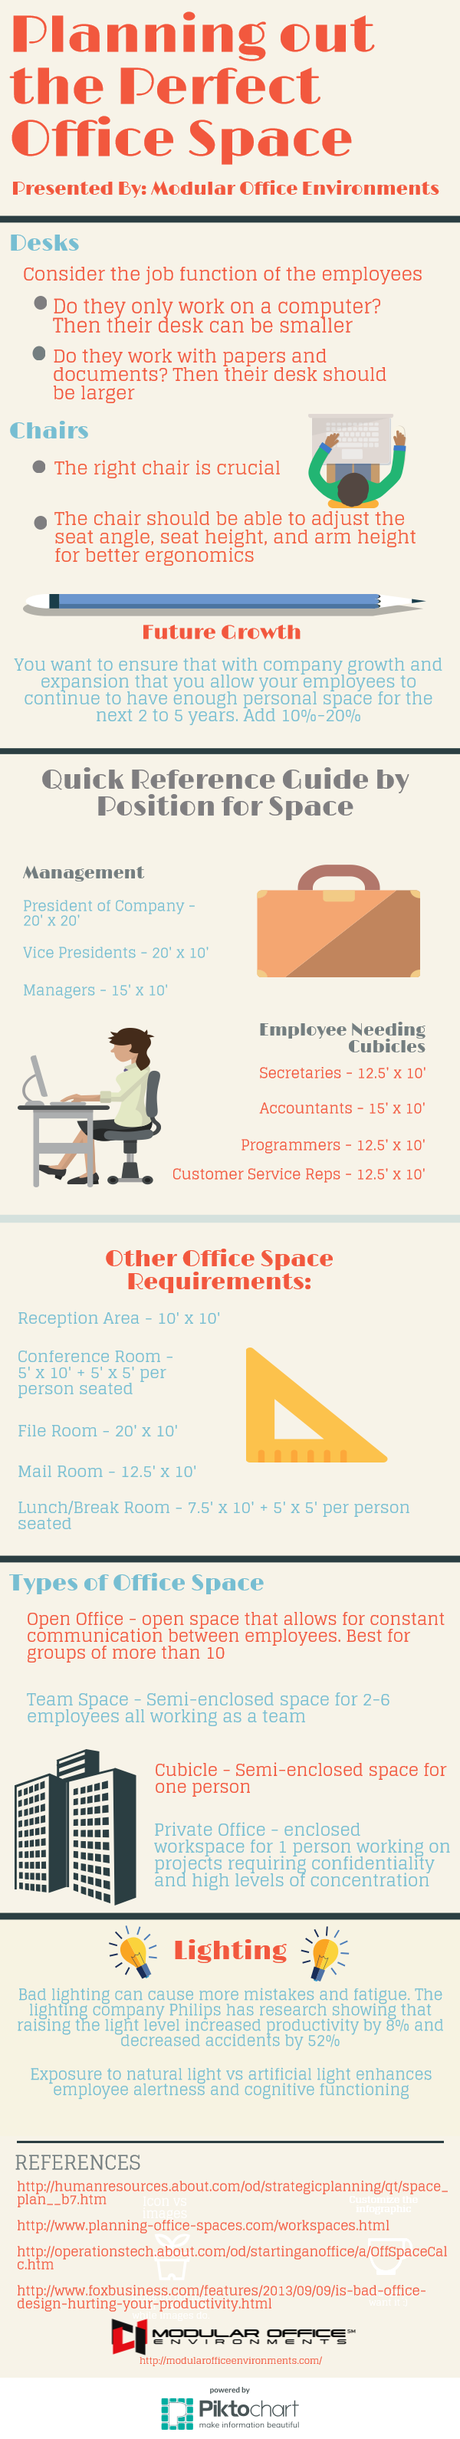 modular-office-environments-final-2